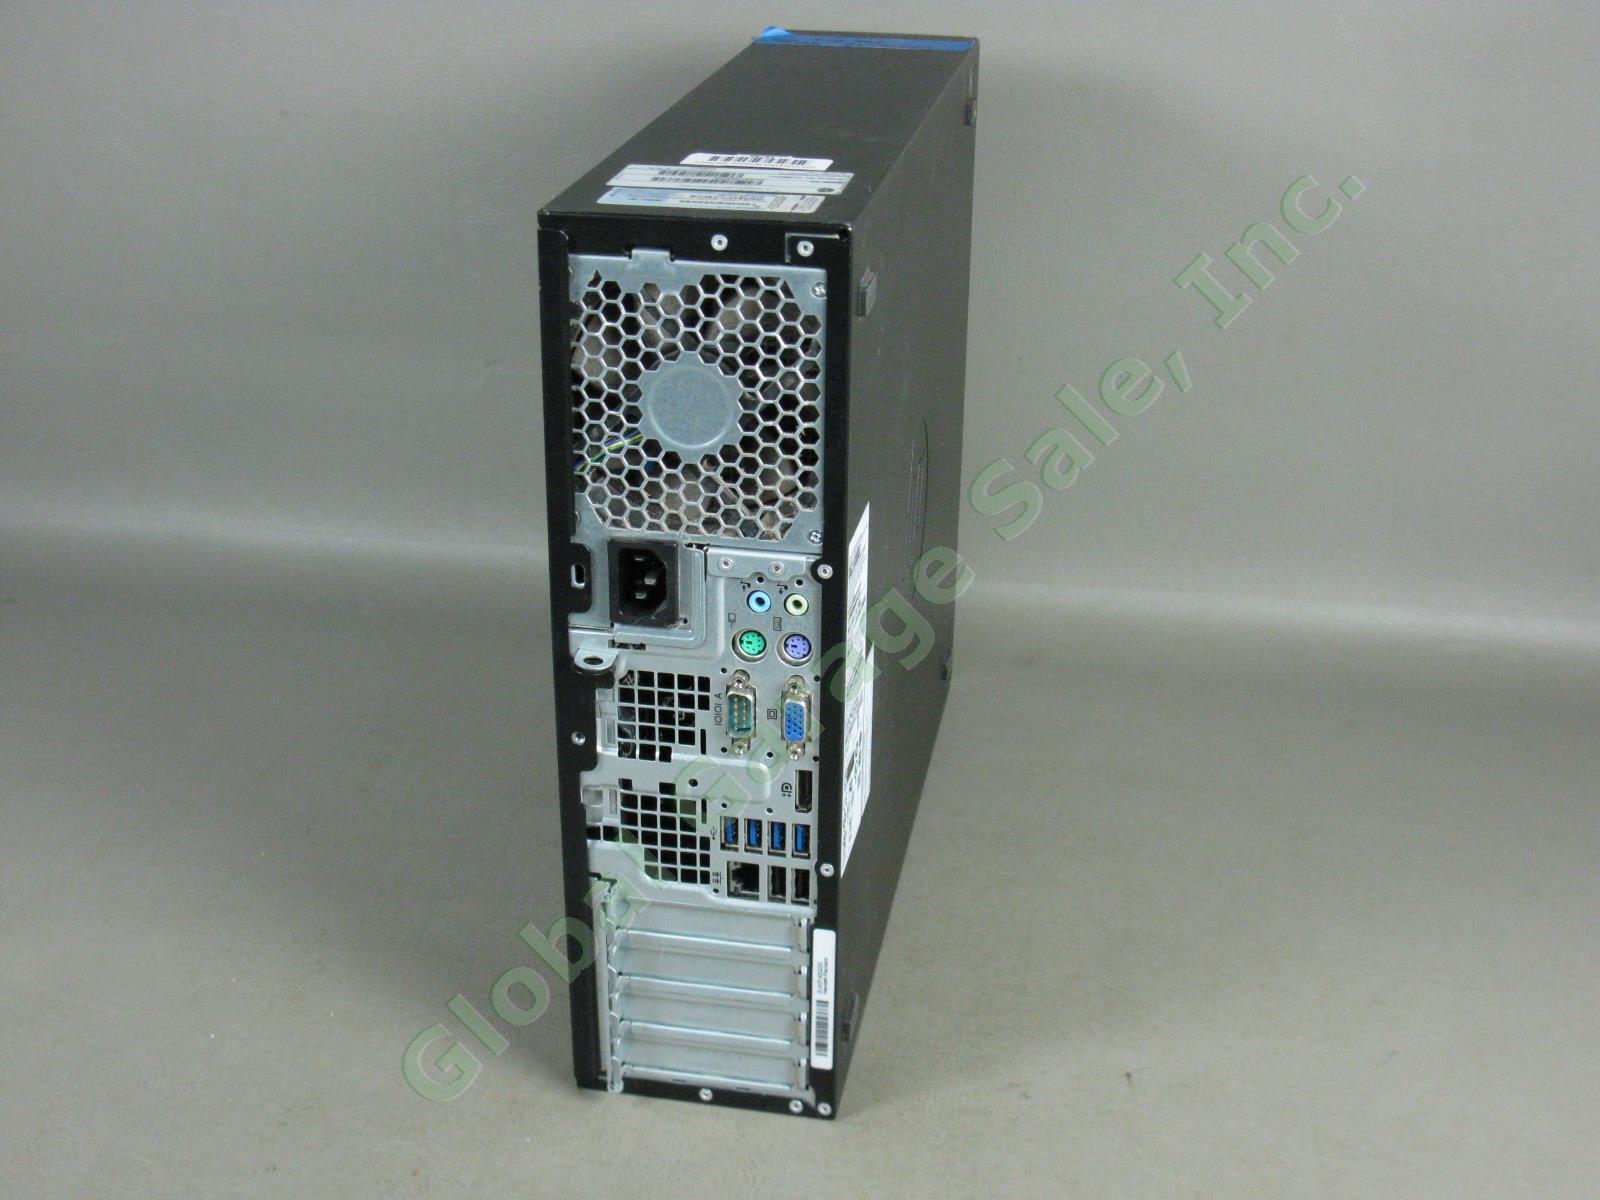 HP Compaq 6300 SFF Desktop Intel i5 3.20GHz 2GB 250GB Windows 10 Pro New Install 3